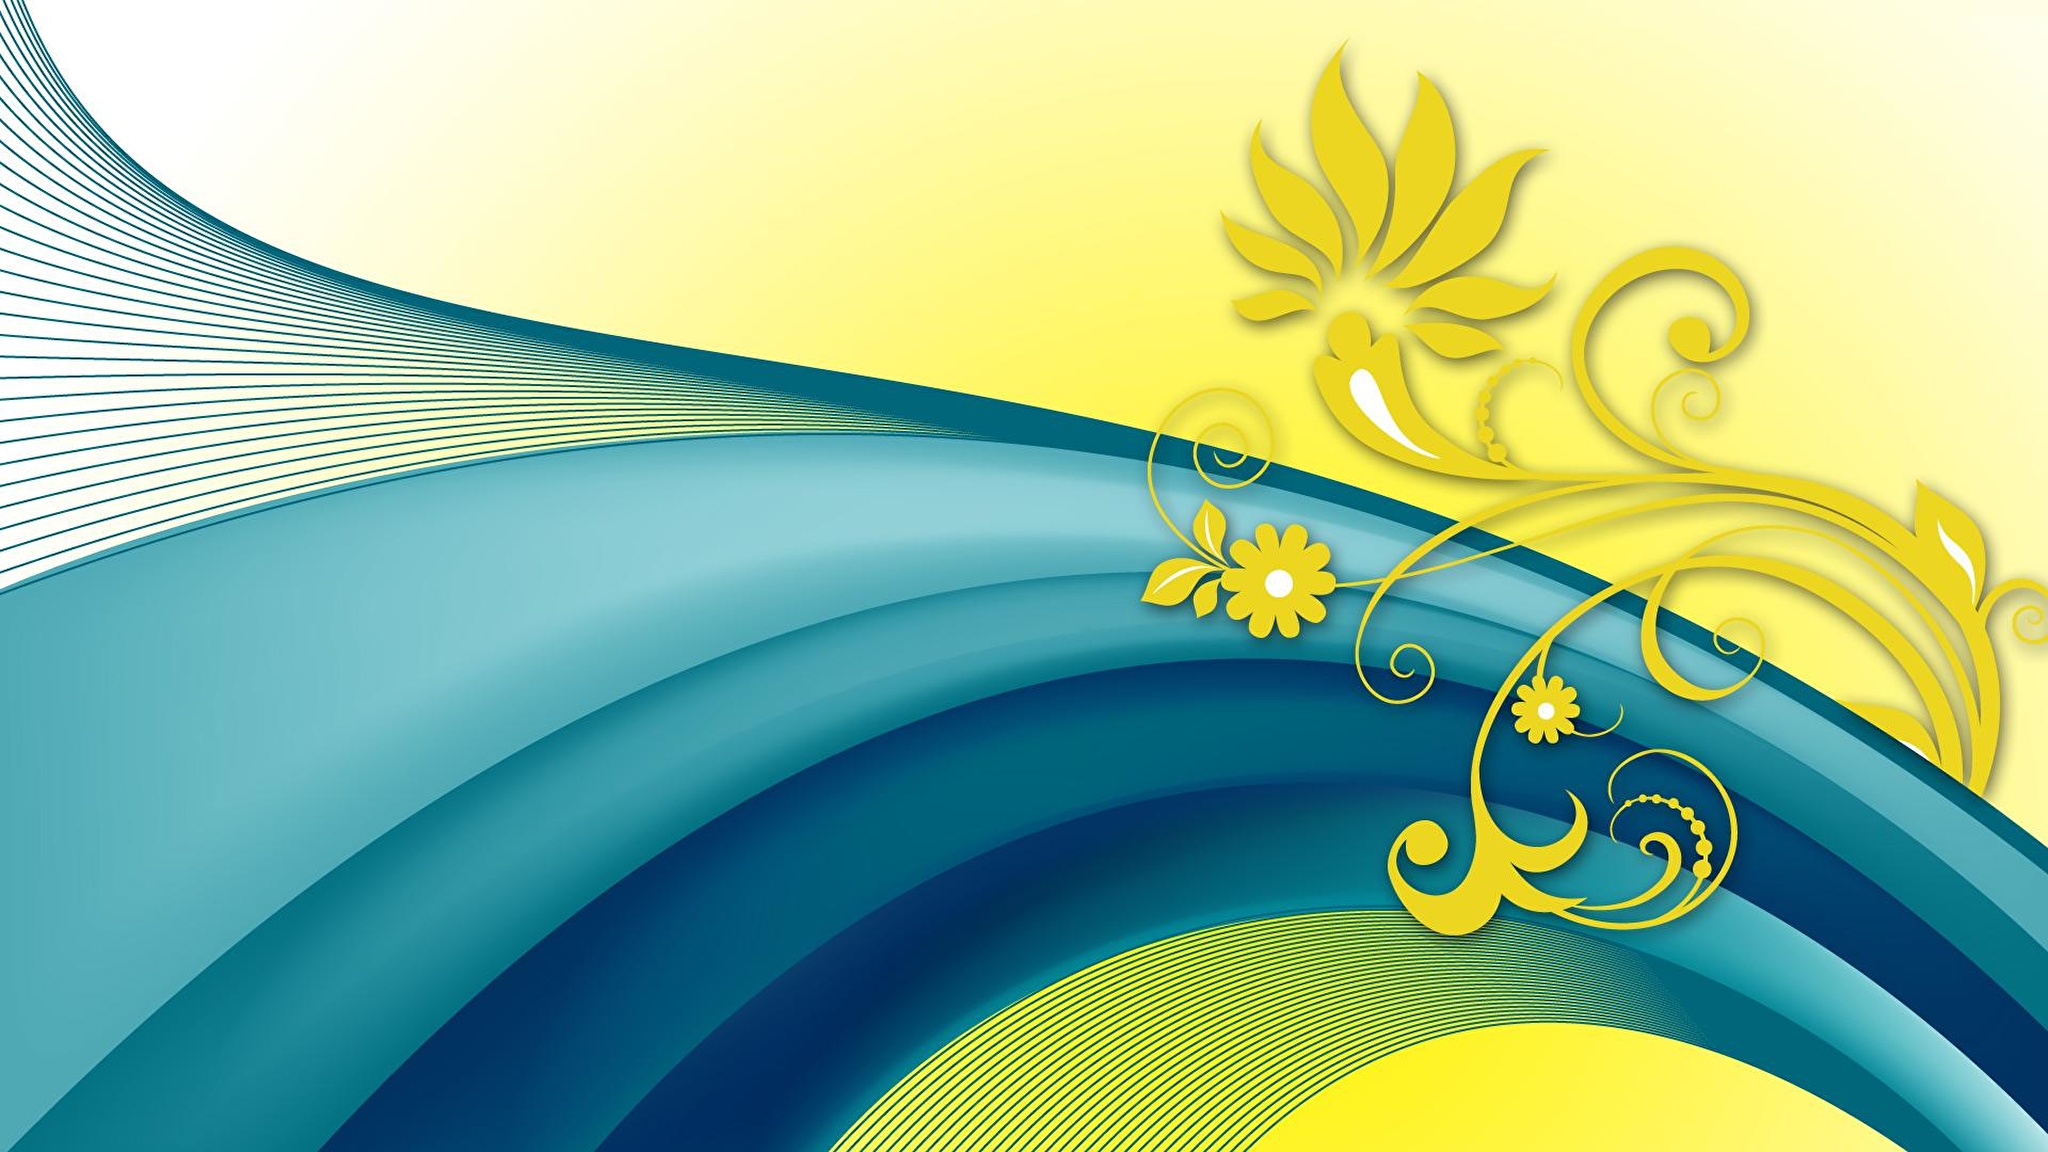 Казахская фоновая музыка. Казахский орнамент фон. Векторный фон. Фон для баннера. Фон с узорами.